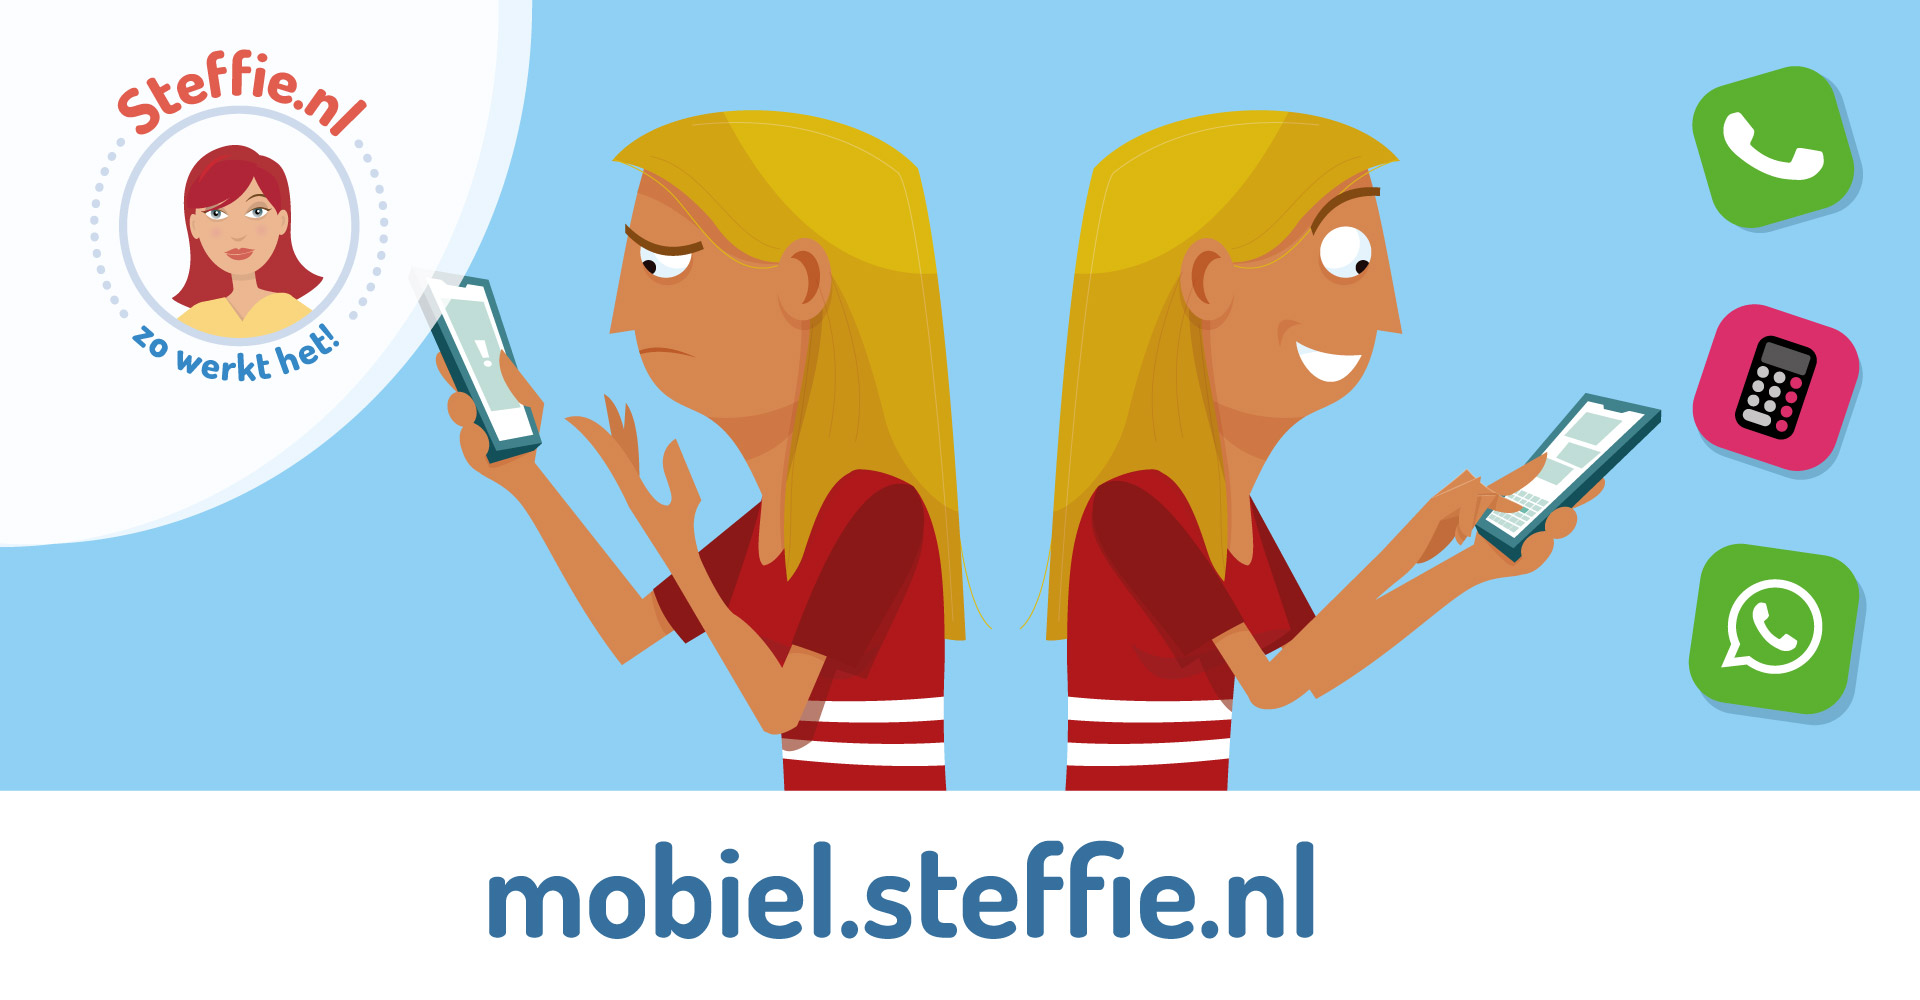 werkt een - Steffie.nl